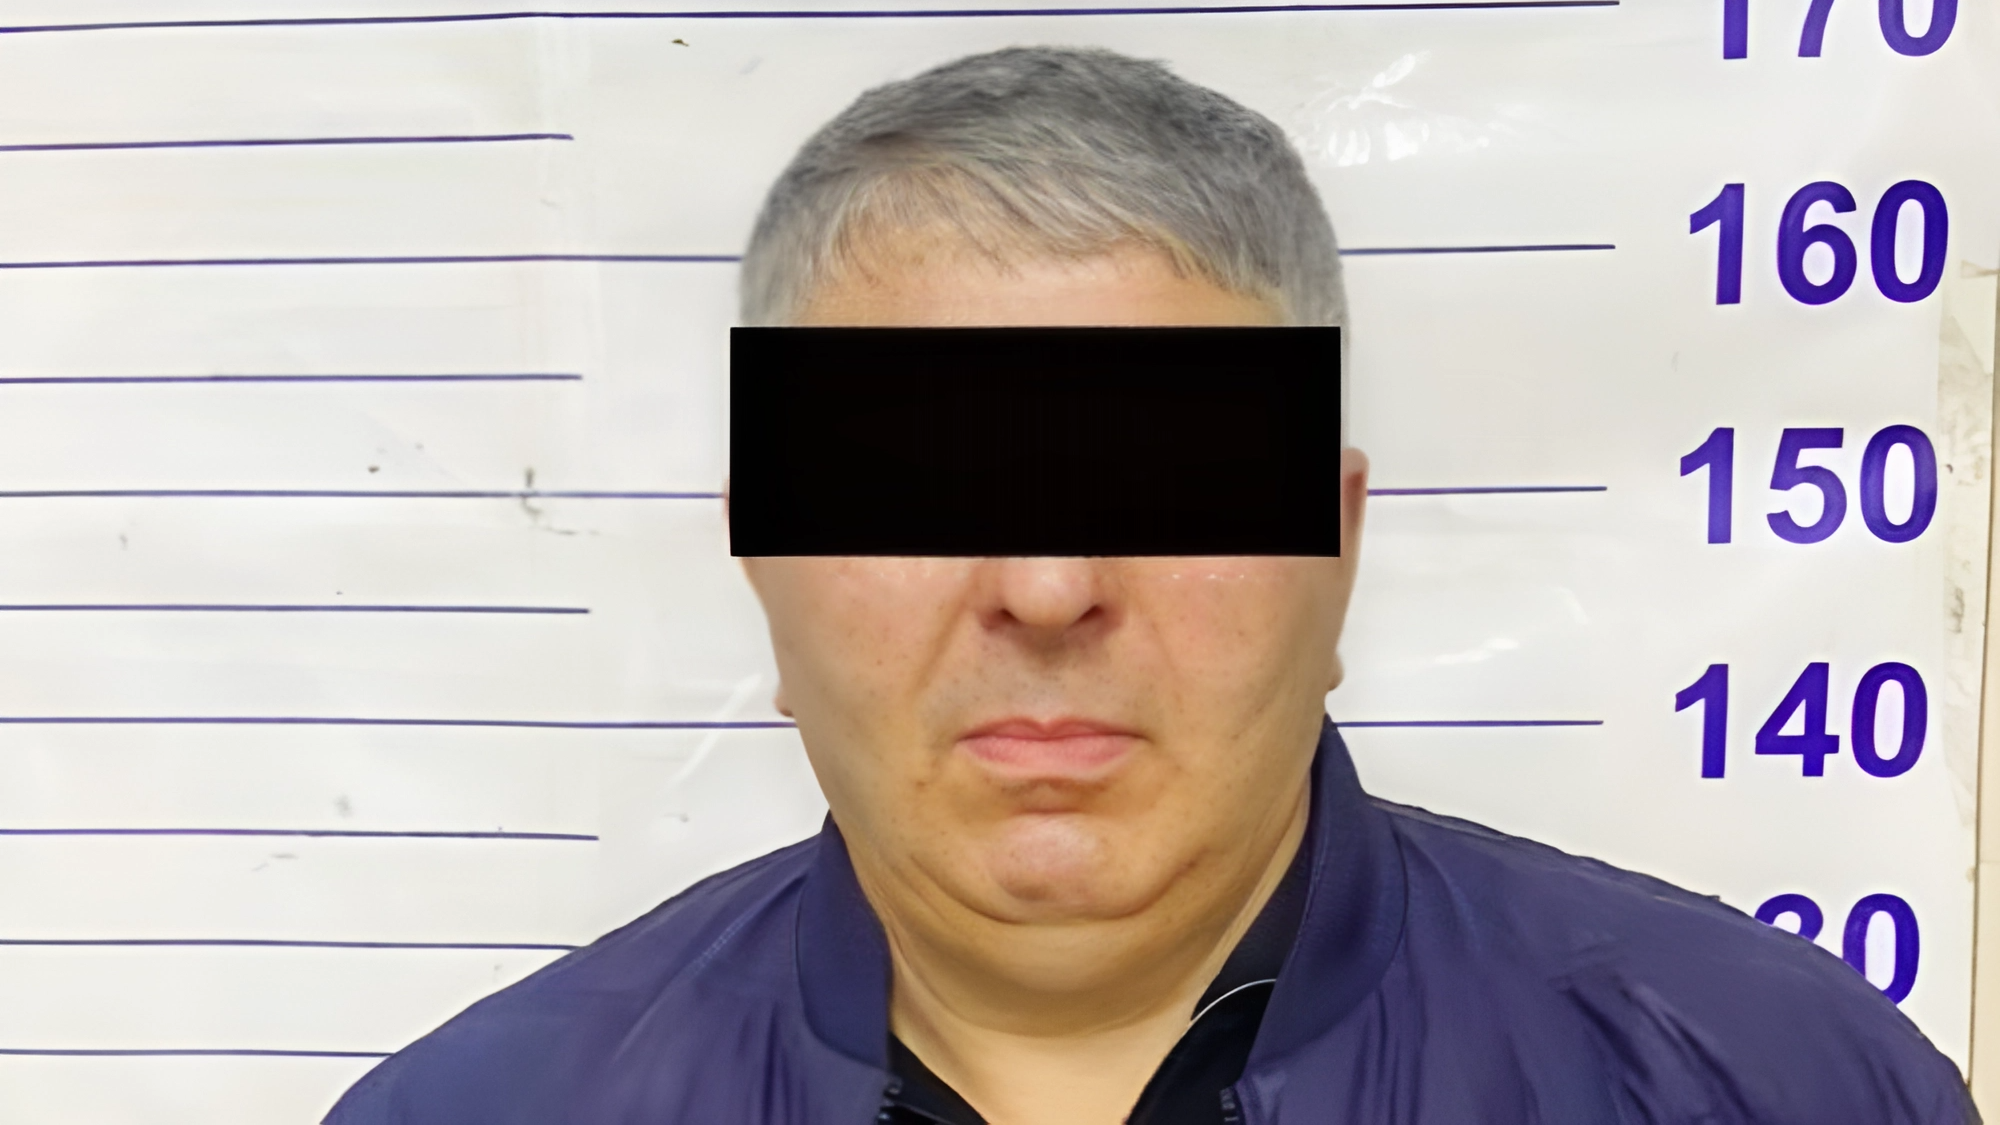 Мужчина украл из салона иномарки в центре Бишкека 8.5 млн сомов — он задержан